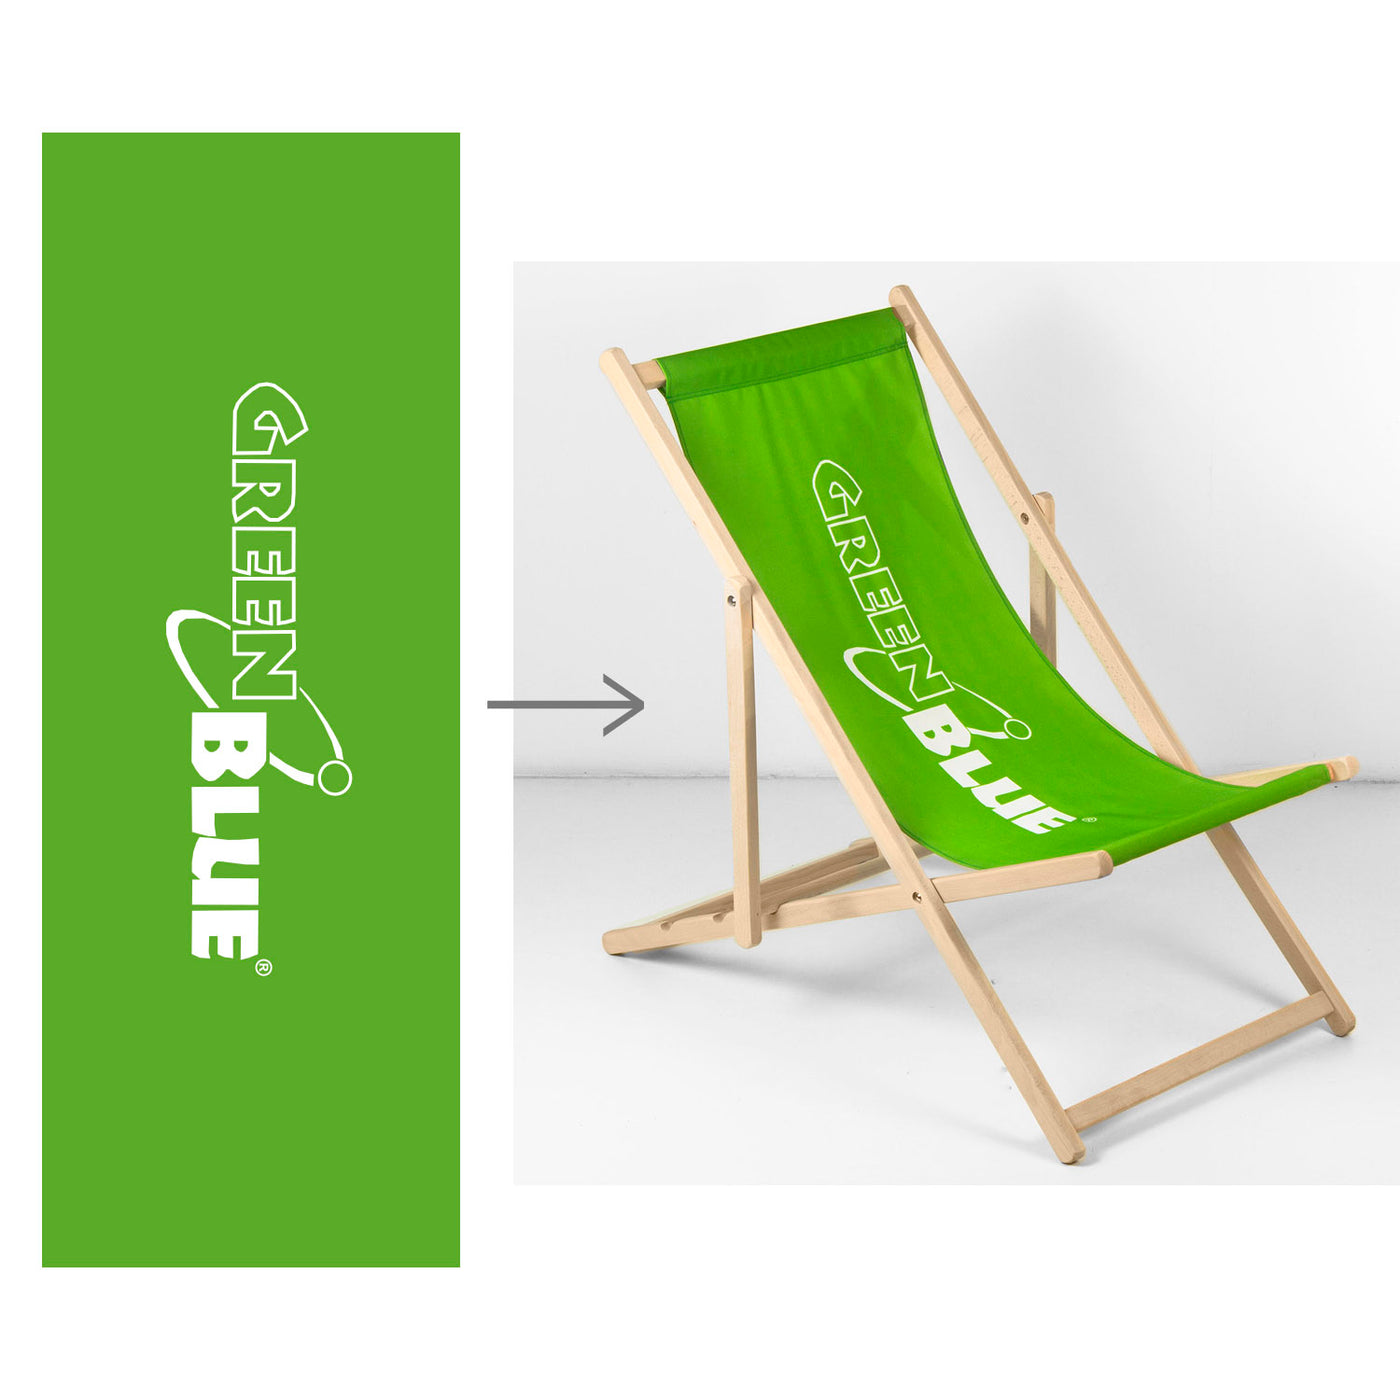 Leżak plażowy klasyczny bukowy drewniany GreenBlue GB183 z własnym nadrukiem, grafiką, logo, leżak reklamowy